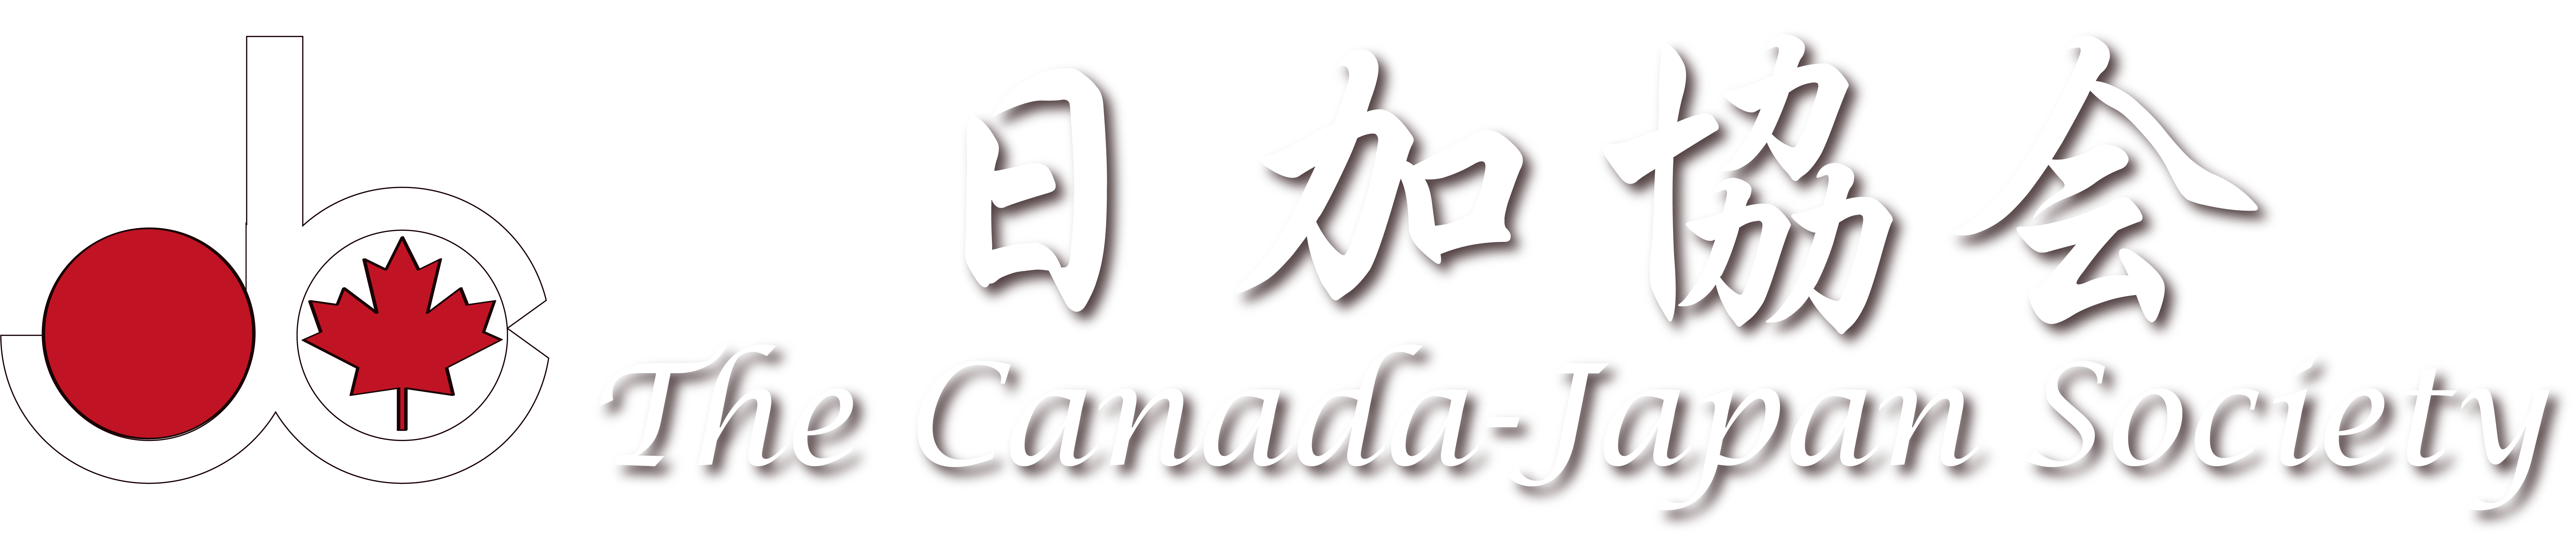 Canada-Japan Society